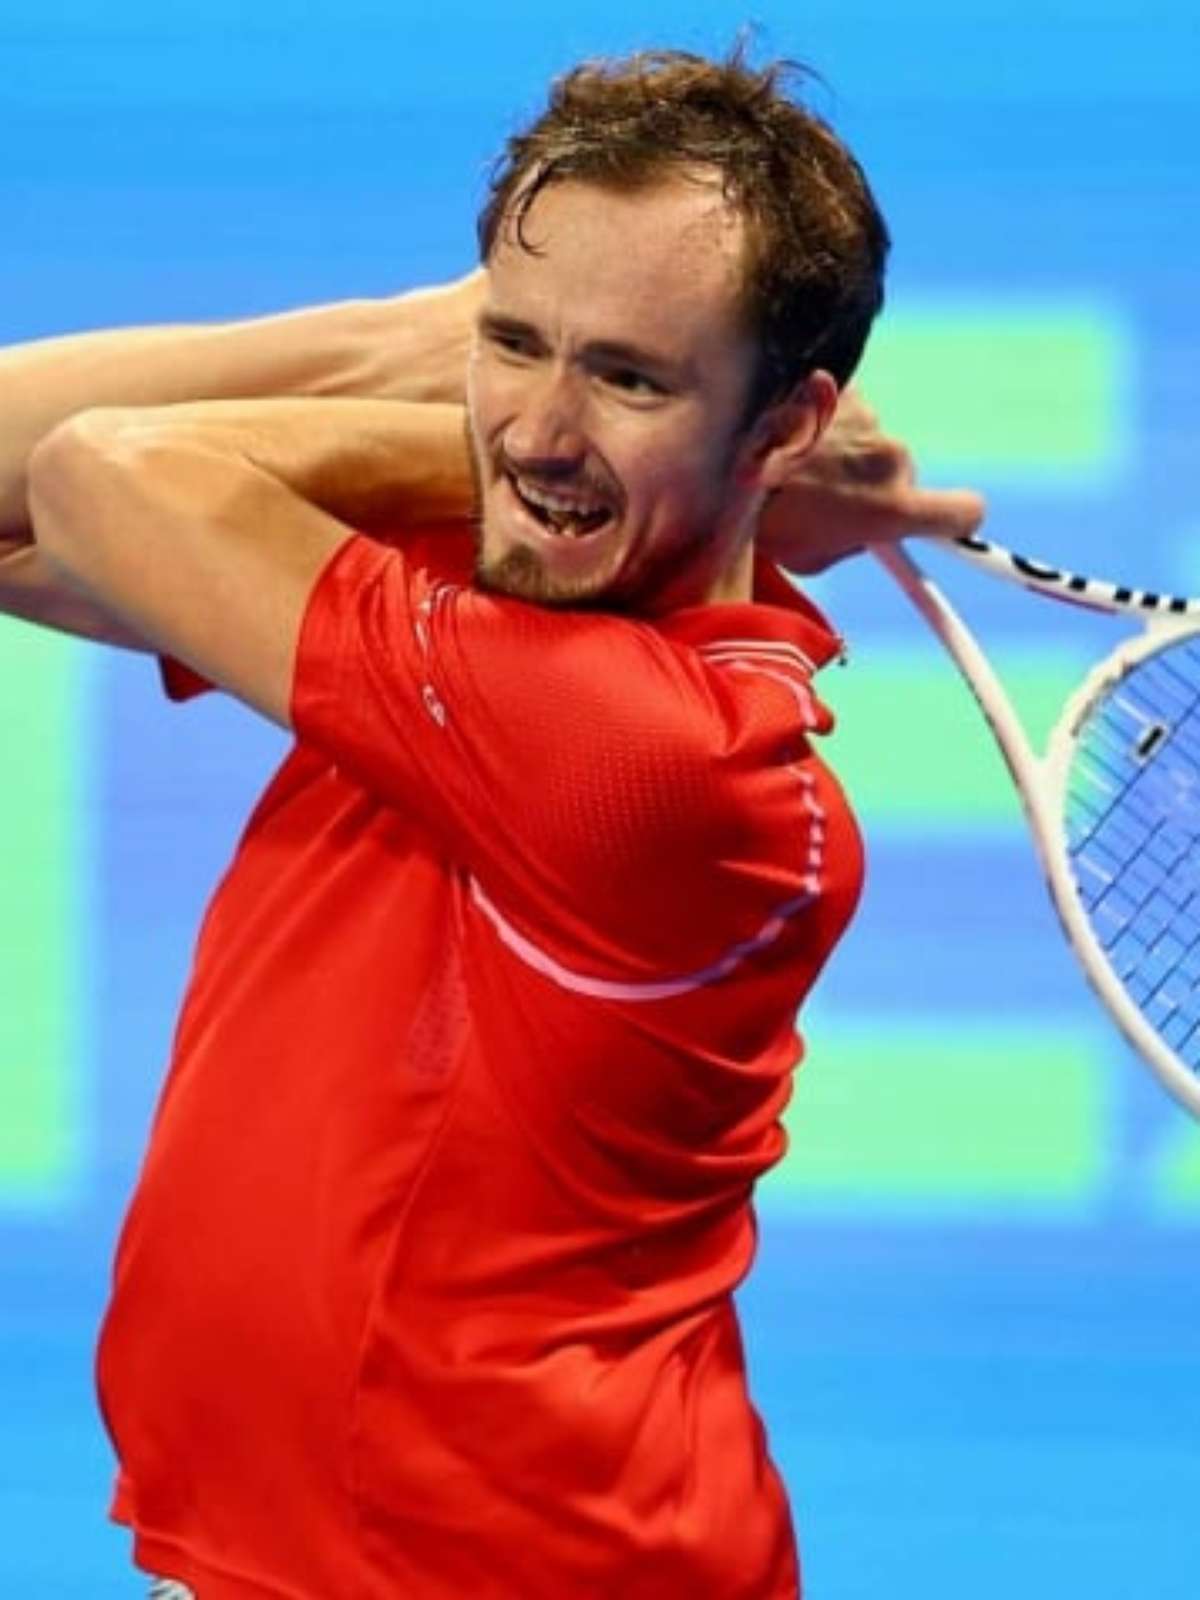 Medvedev segue reclamando da quadra de Indian Wells: 'Uma vergonha' - Tenis  News